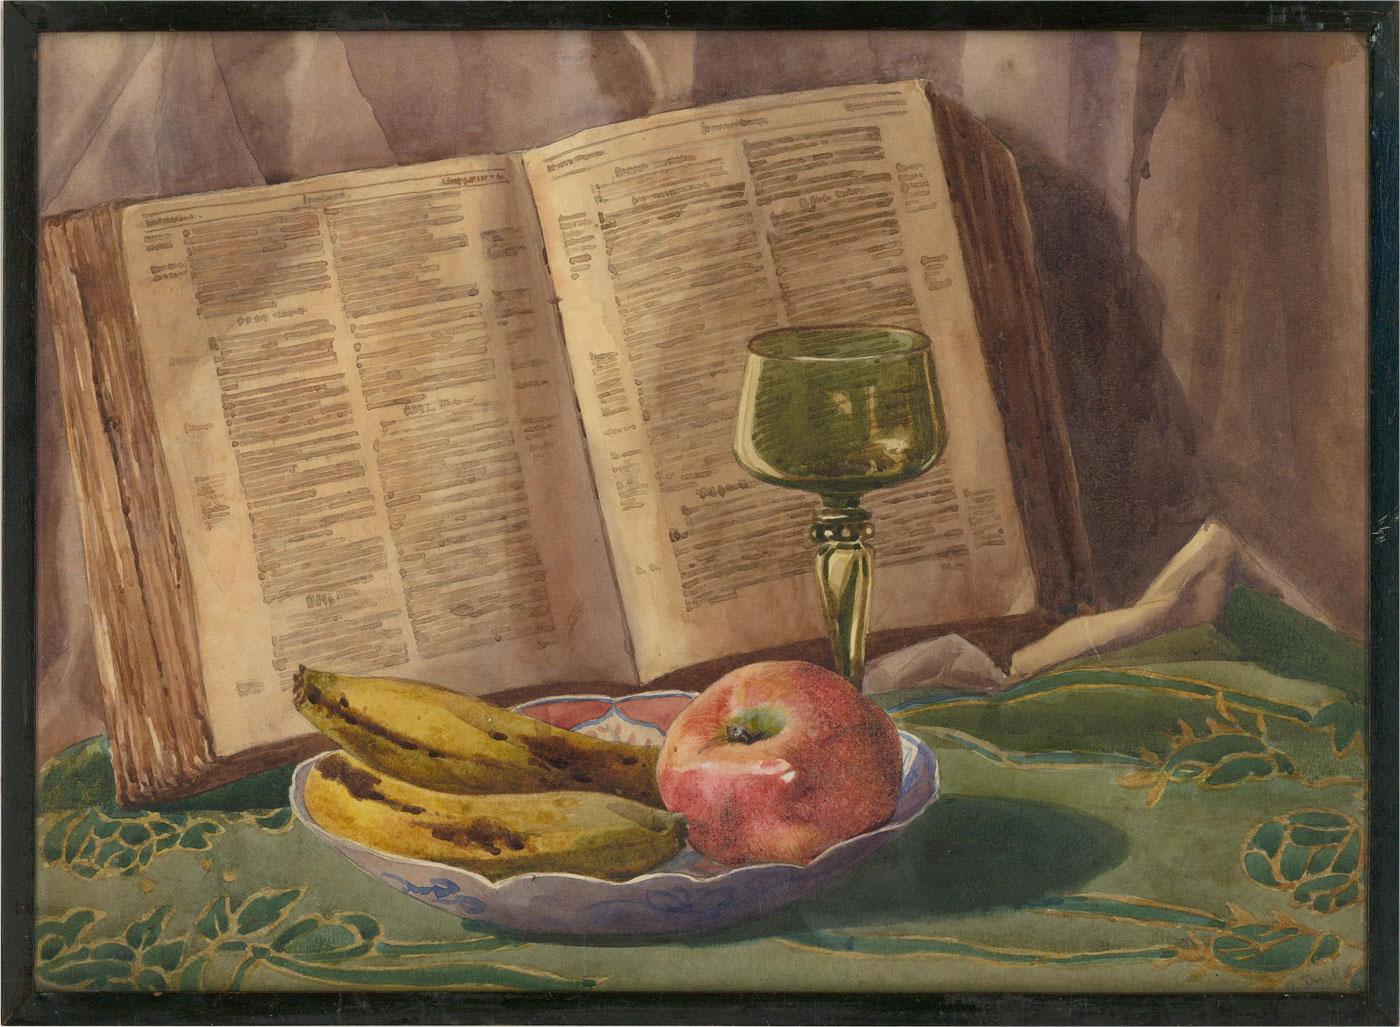 Une délicate et finement exécutée aquarelle du début du 20ème siècle représentant un bol de pommes et de bananes, un délicat gobelet vert avec des détails en verre et un livre ouvert, probablement une encyclopédie ou un dictionnaire. L'artiste a